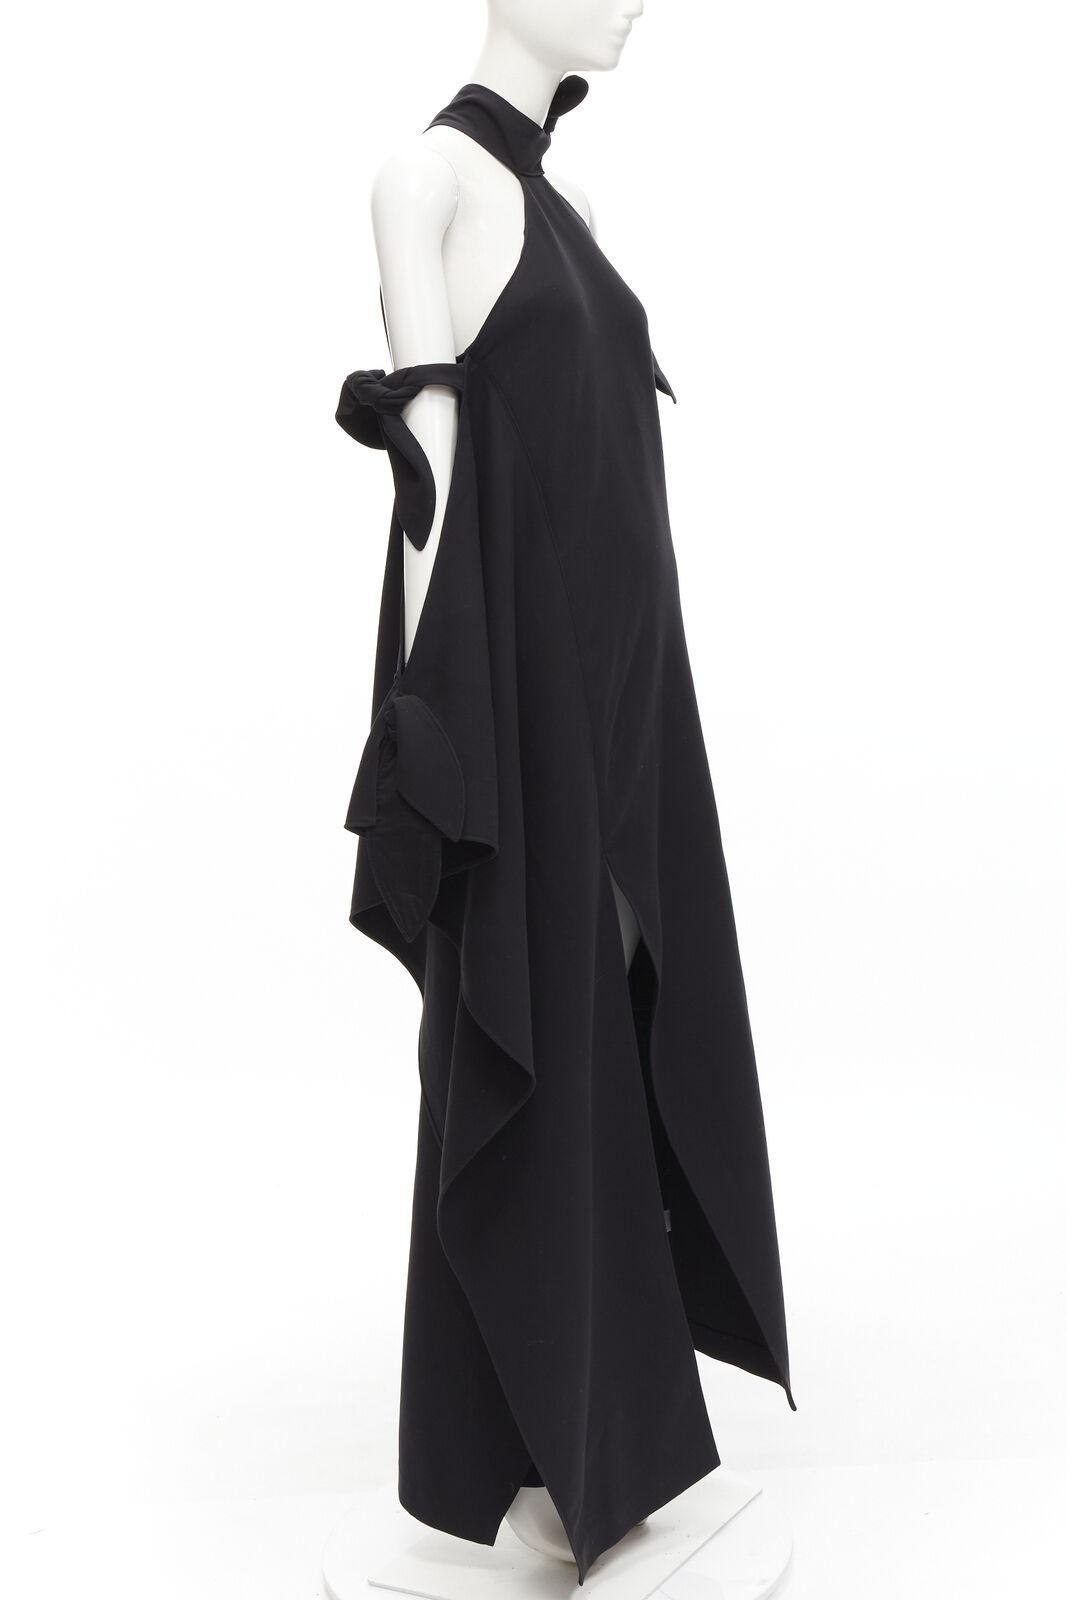 Noir ROSIE ASSOULIN Robe de défilé noire à épaules dénudées et dos nu à fente haute, Taille US2 S, 2015 en vente